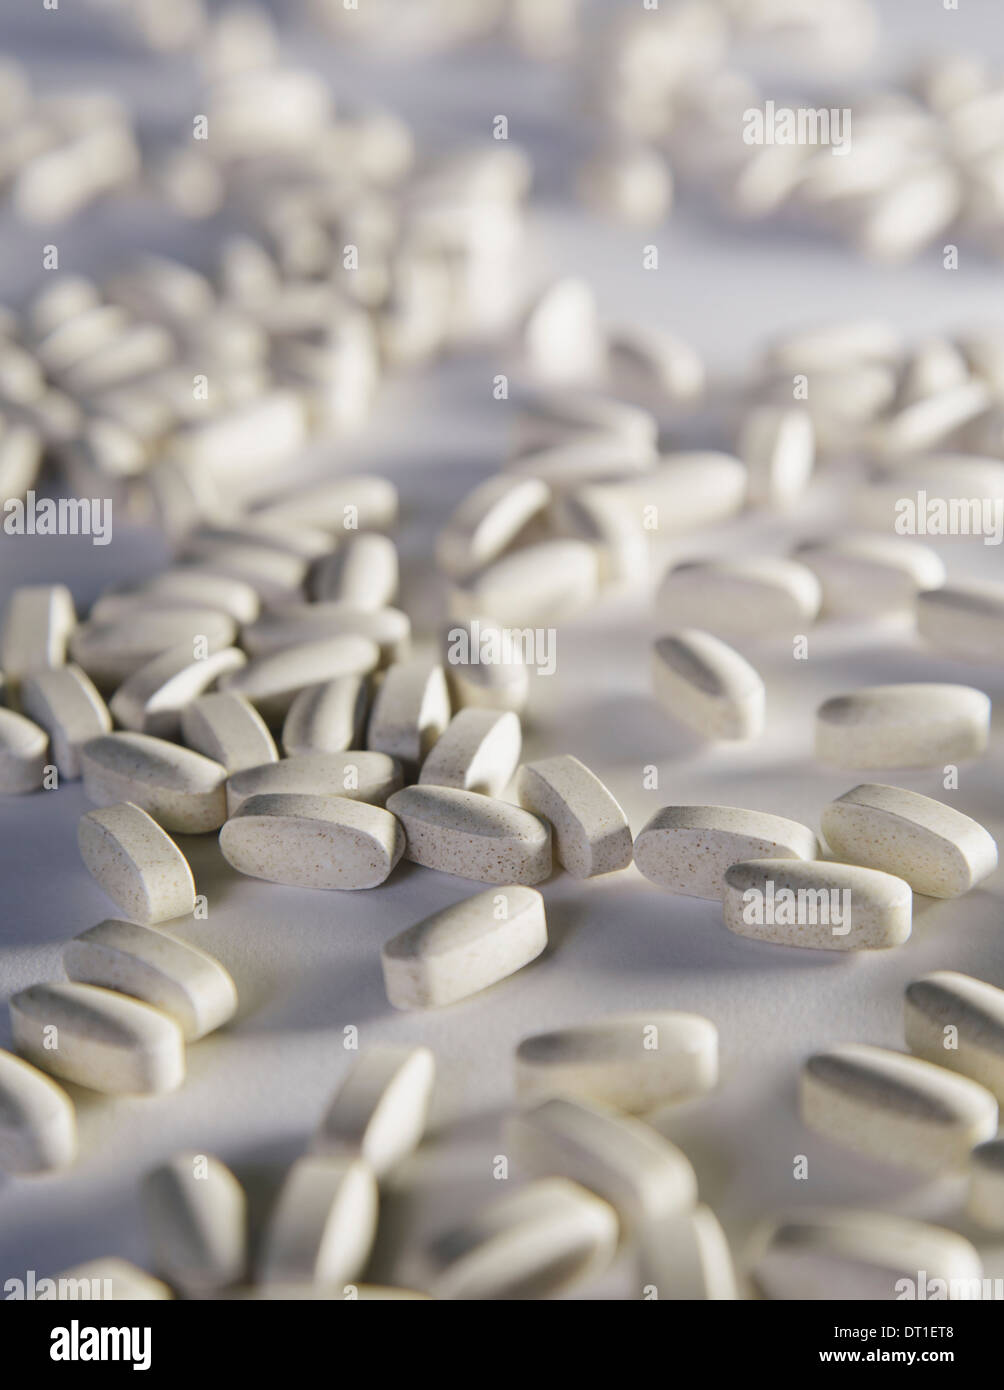 Suplementos de vitamina C blanca ovalada comprimidos tomados por razones de salud repartidas sobre un fondo blanco. Foto de stock